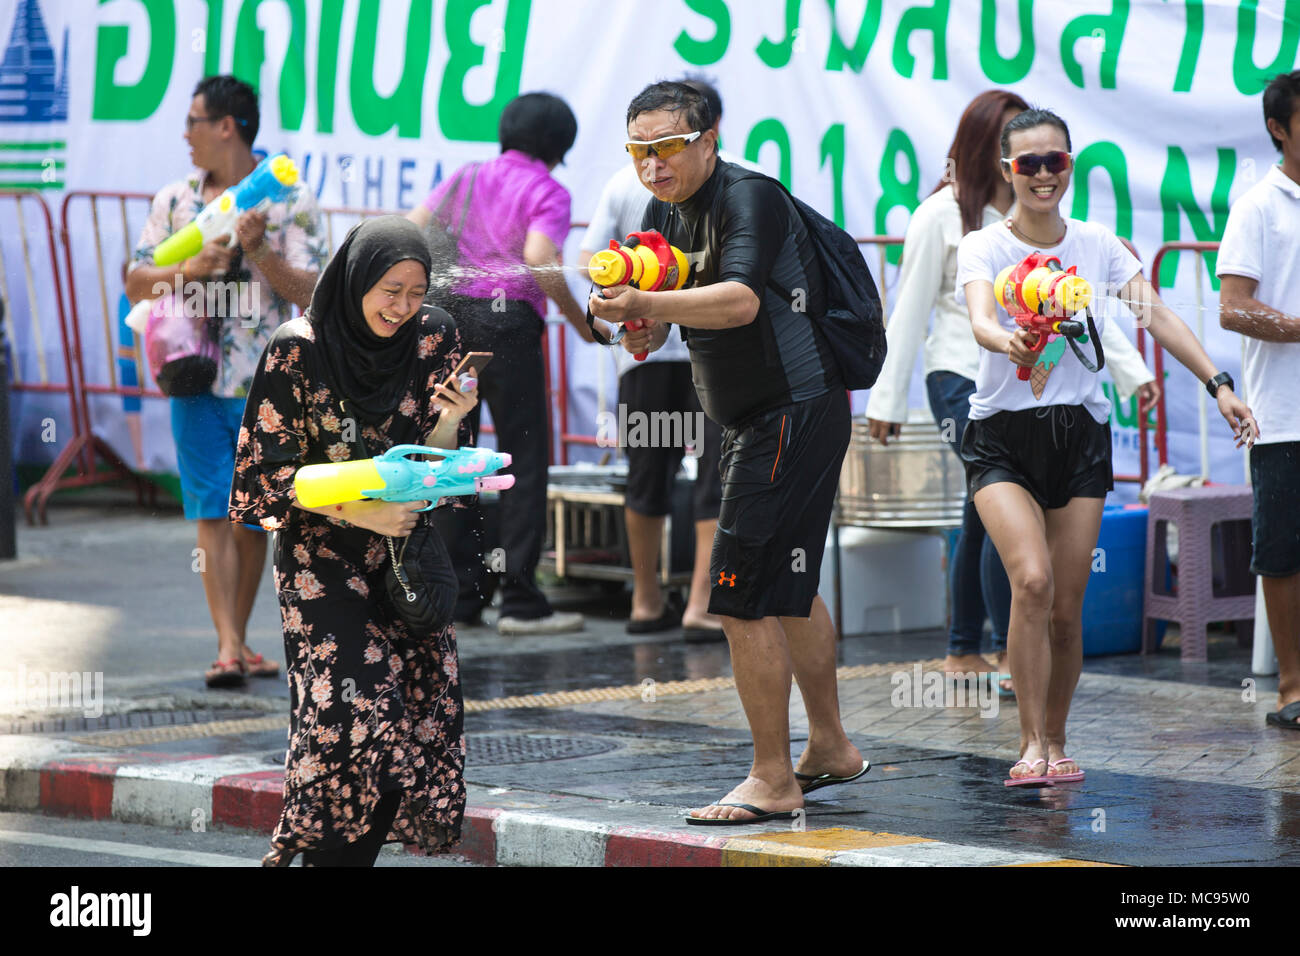 BANGKOK, THAILAND - 13 April, 2018: die Menschen auf den Straßen von Bangkok während des ersten Tages des Songkran Festival, Thai Neujahr feiern. Stockfoto